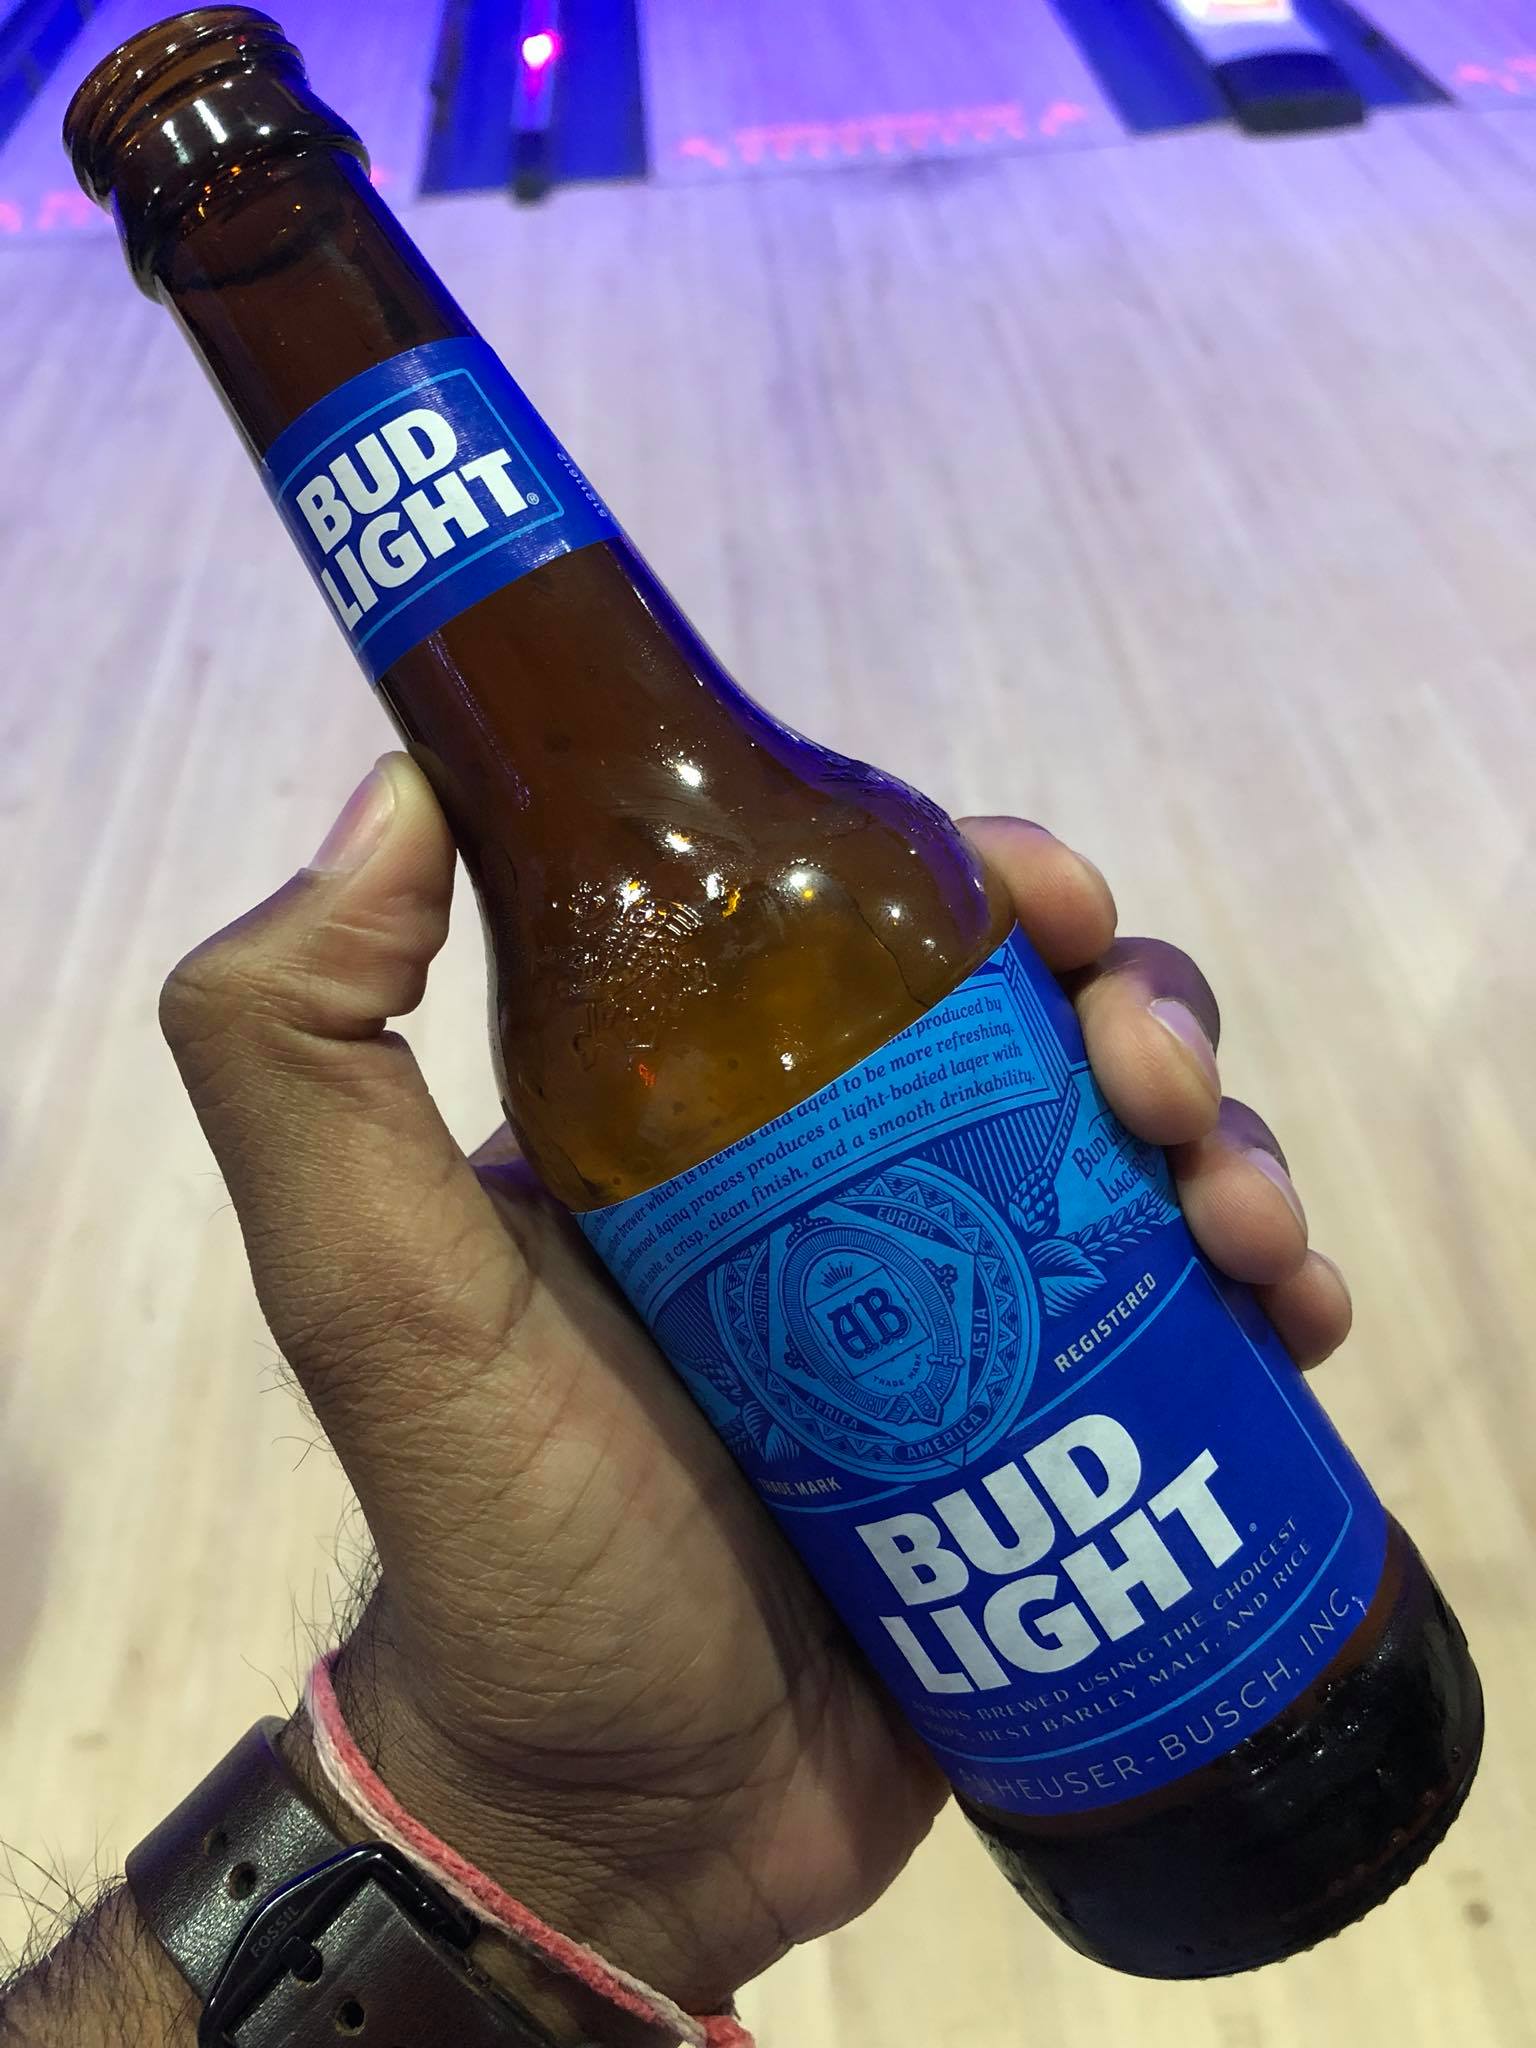 Bud Light
